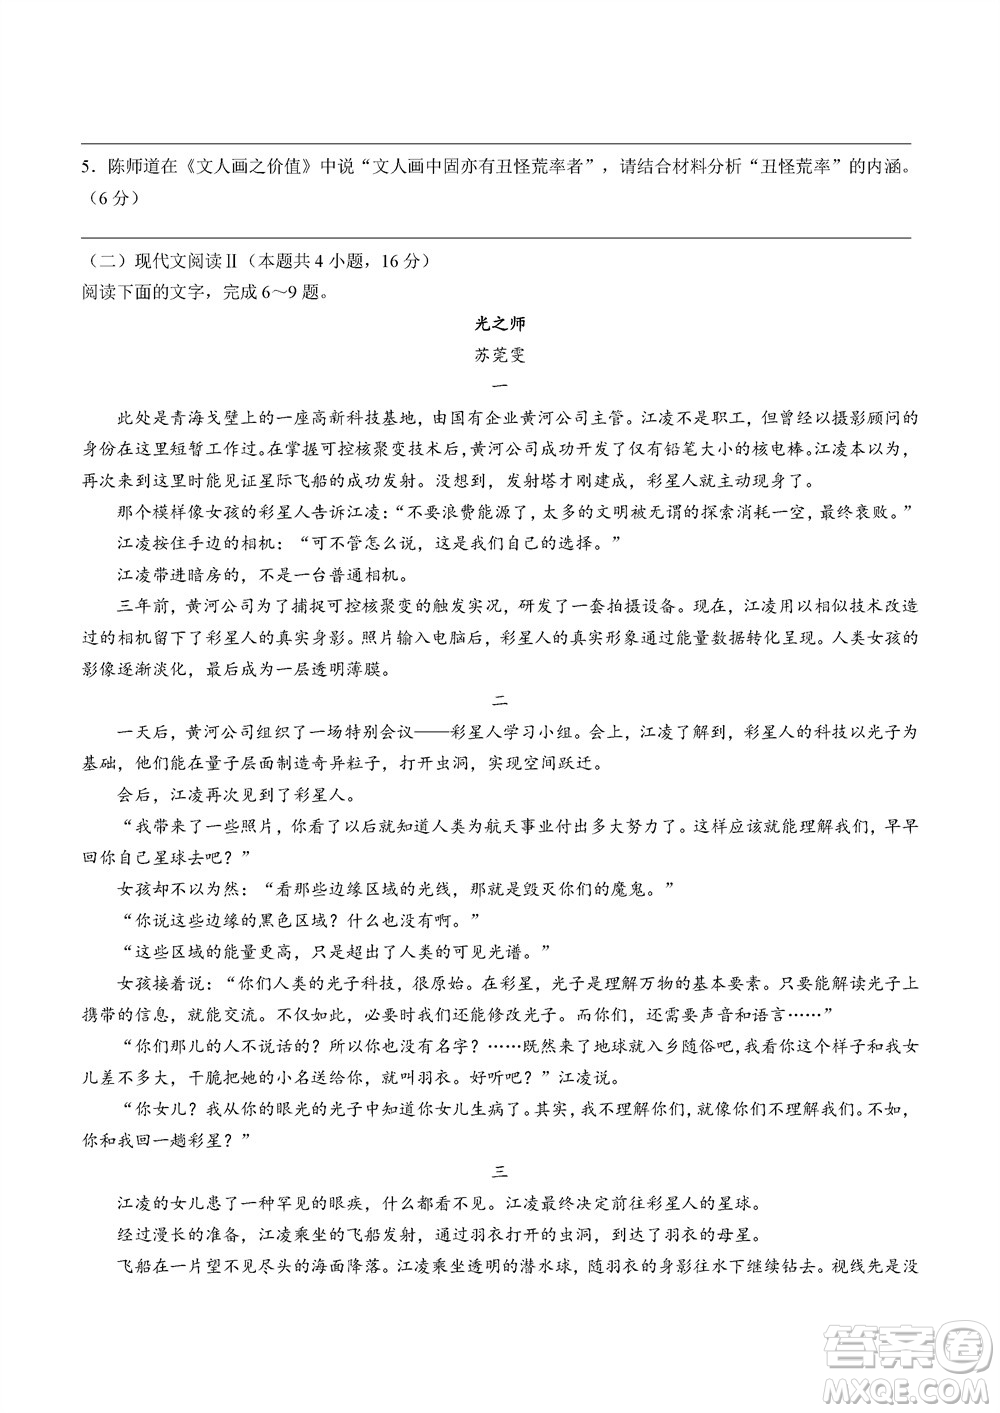 2023年11月浙江稽阳联谊学校高三联考语文参考答案